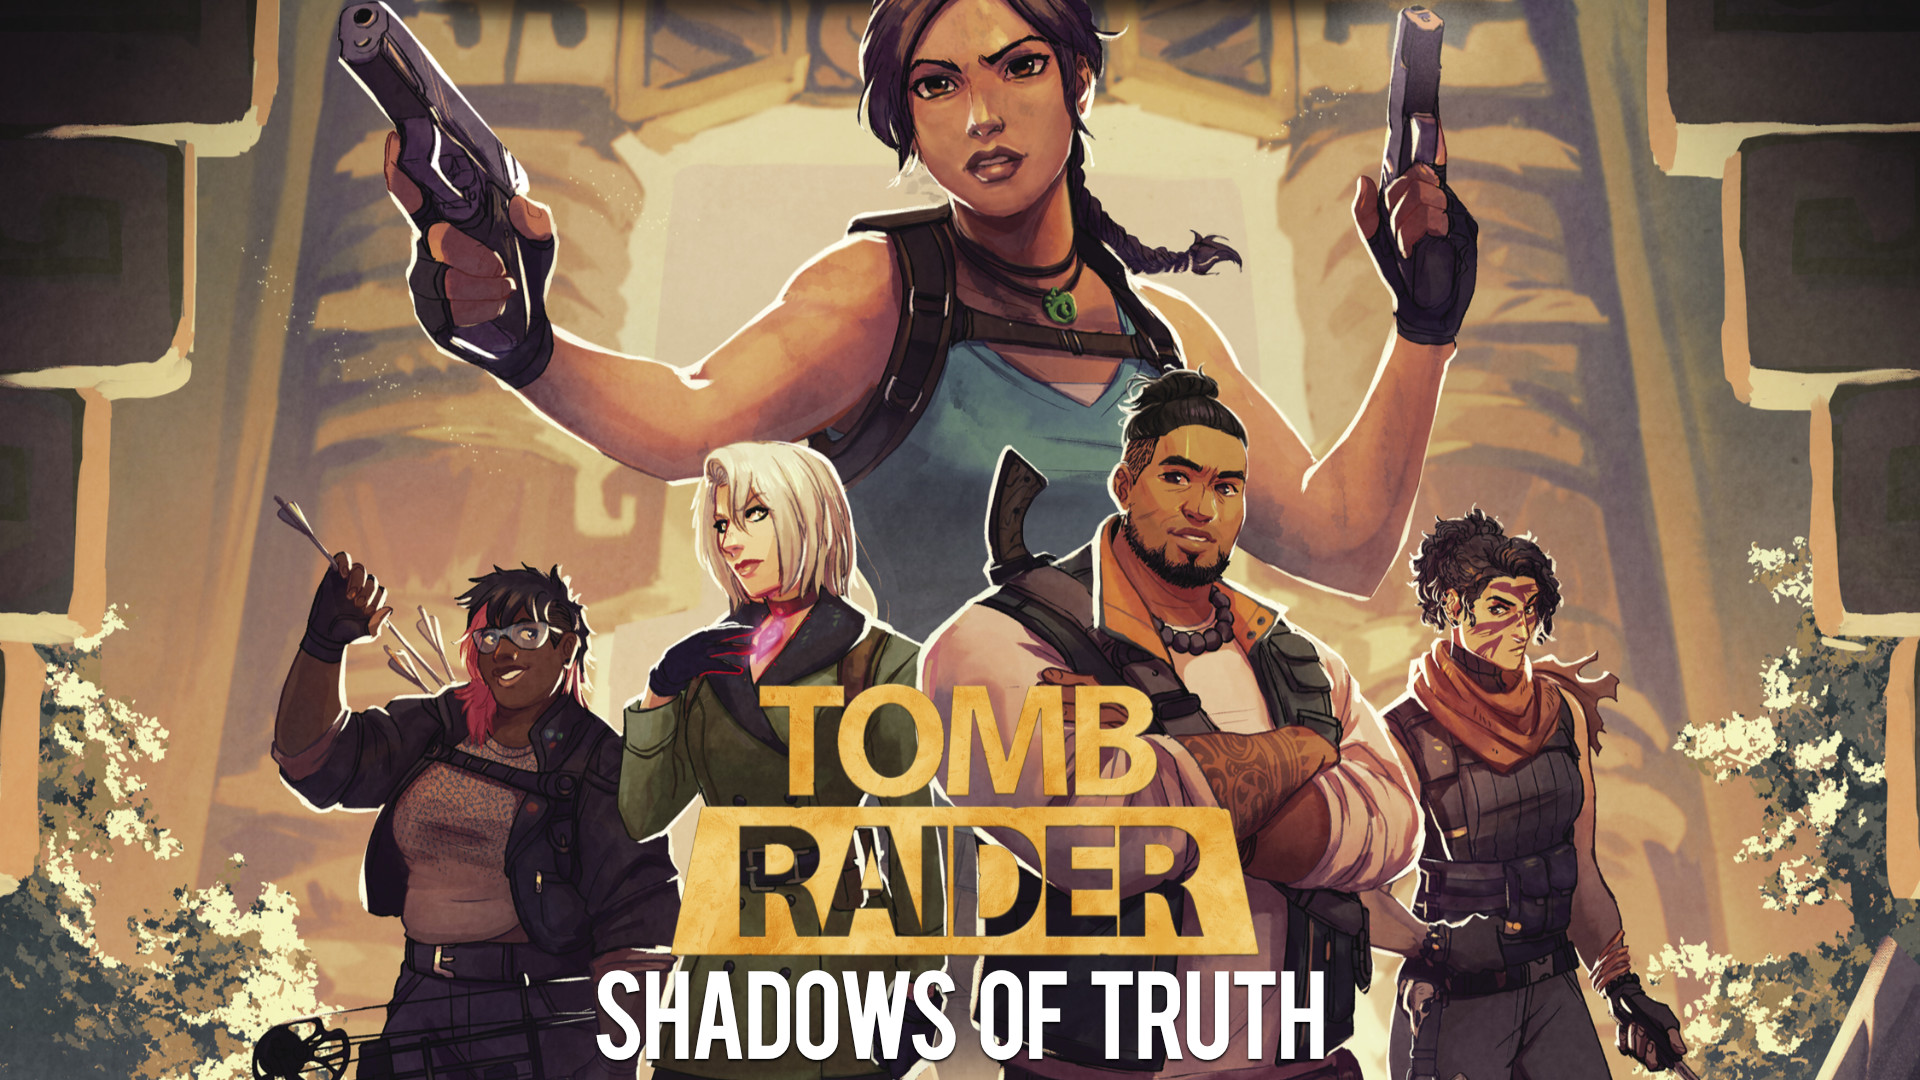 Франшиза Tomb Raider меняется, чтобы помочь избежать колониального прошлого